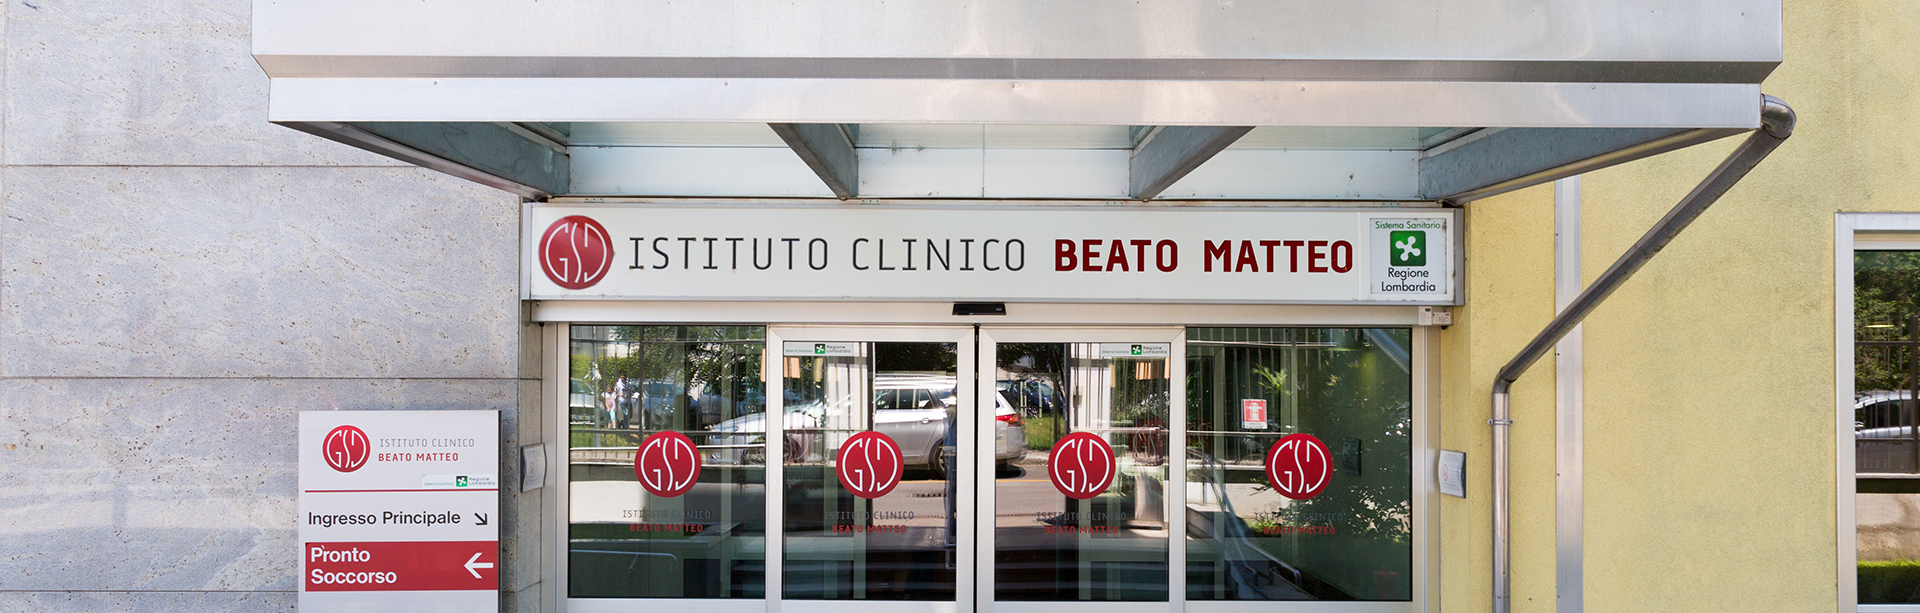 Istituto Clinico Beato Matteo